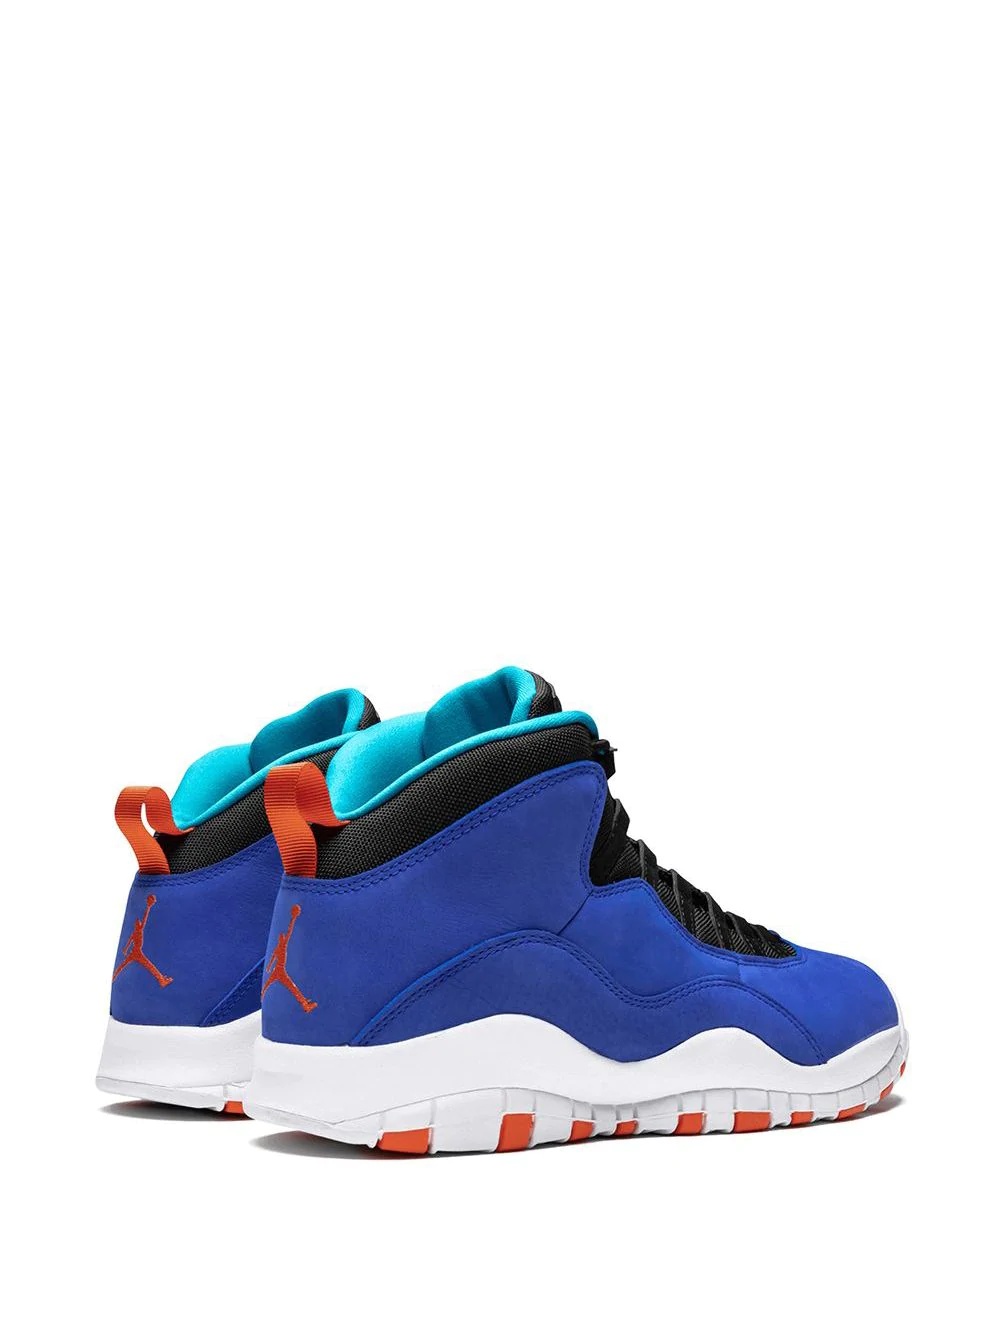 Air Jordan 10 Retro "Tinker" sneakers - 3